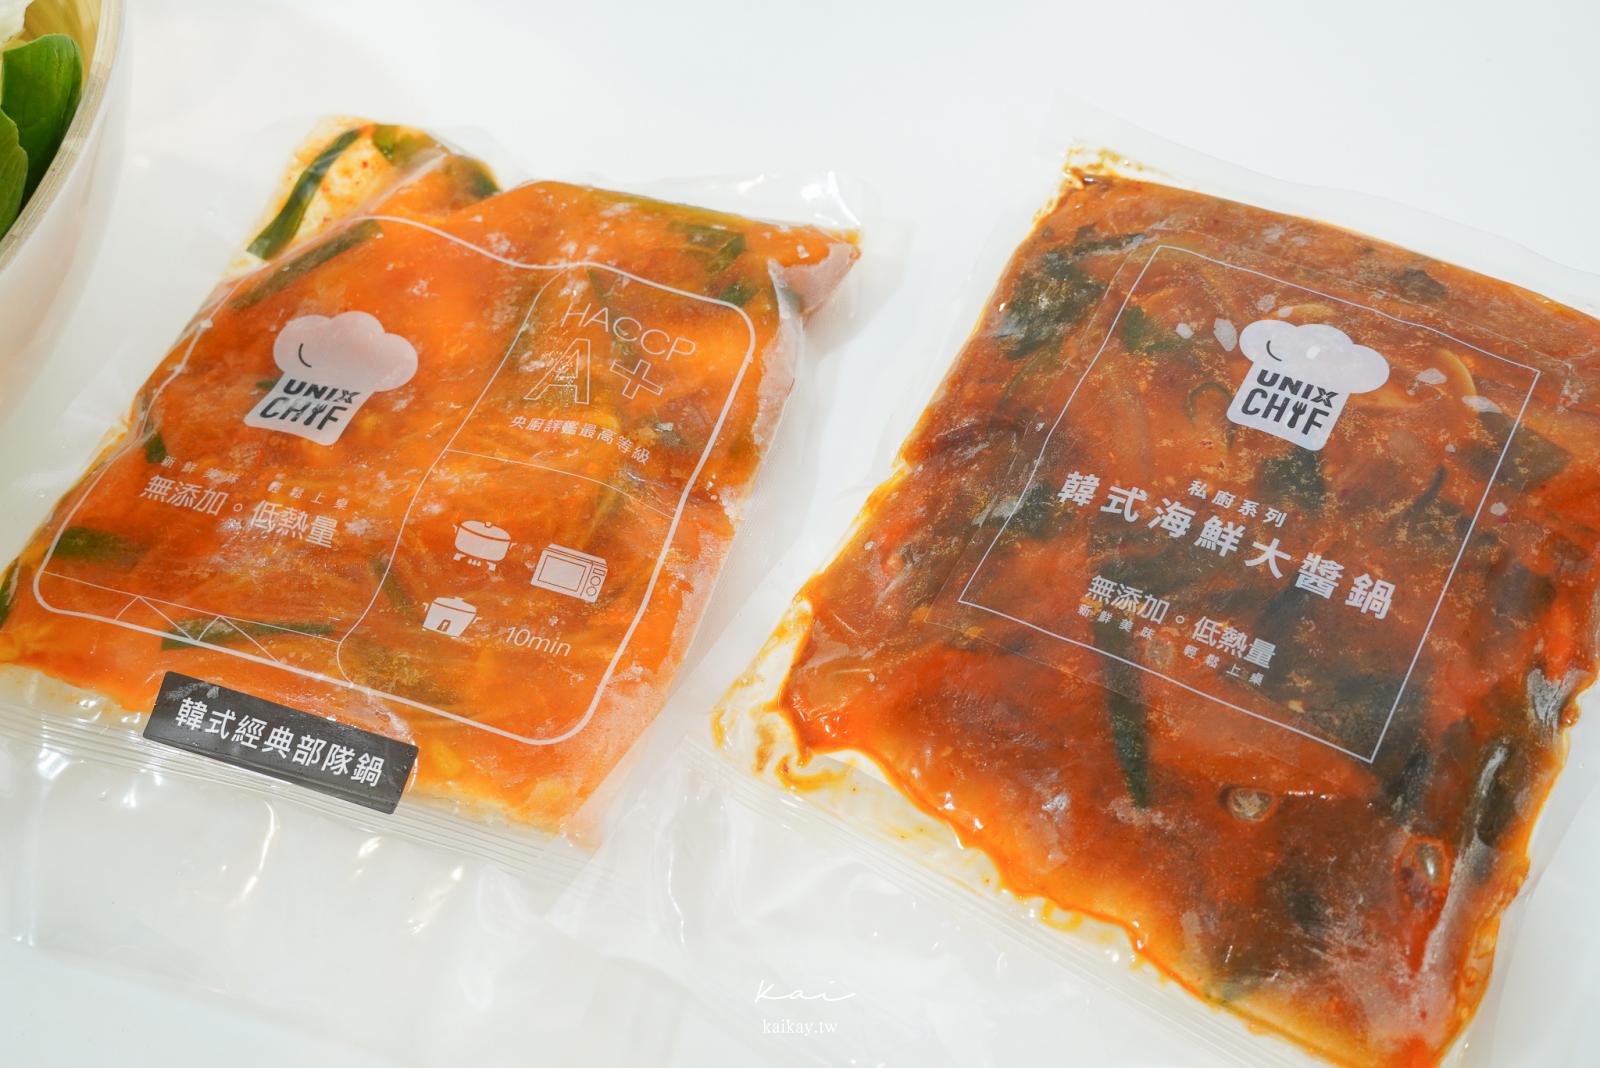 ☆【宅配美食】Unix Chef 韓式私廚低卡冷凍料理韓式部隊鍋、韓式海味豆腐大醬湯